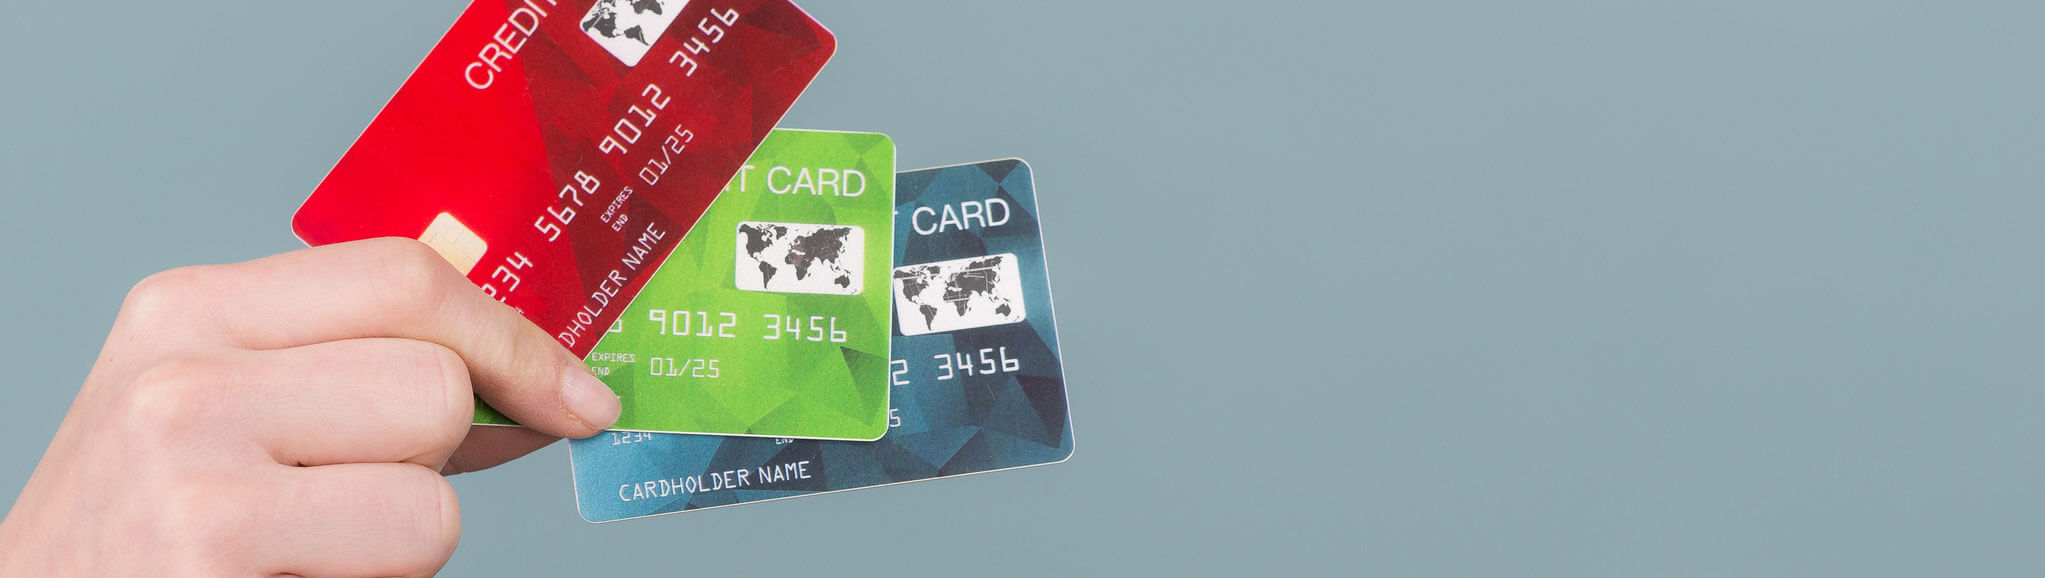 Limits beim Bezahlen mit VISA » Kreditkartenlimit erklärt!